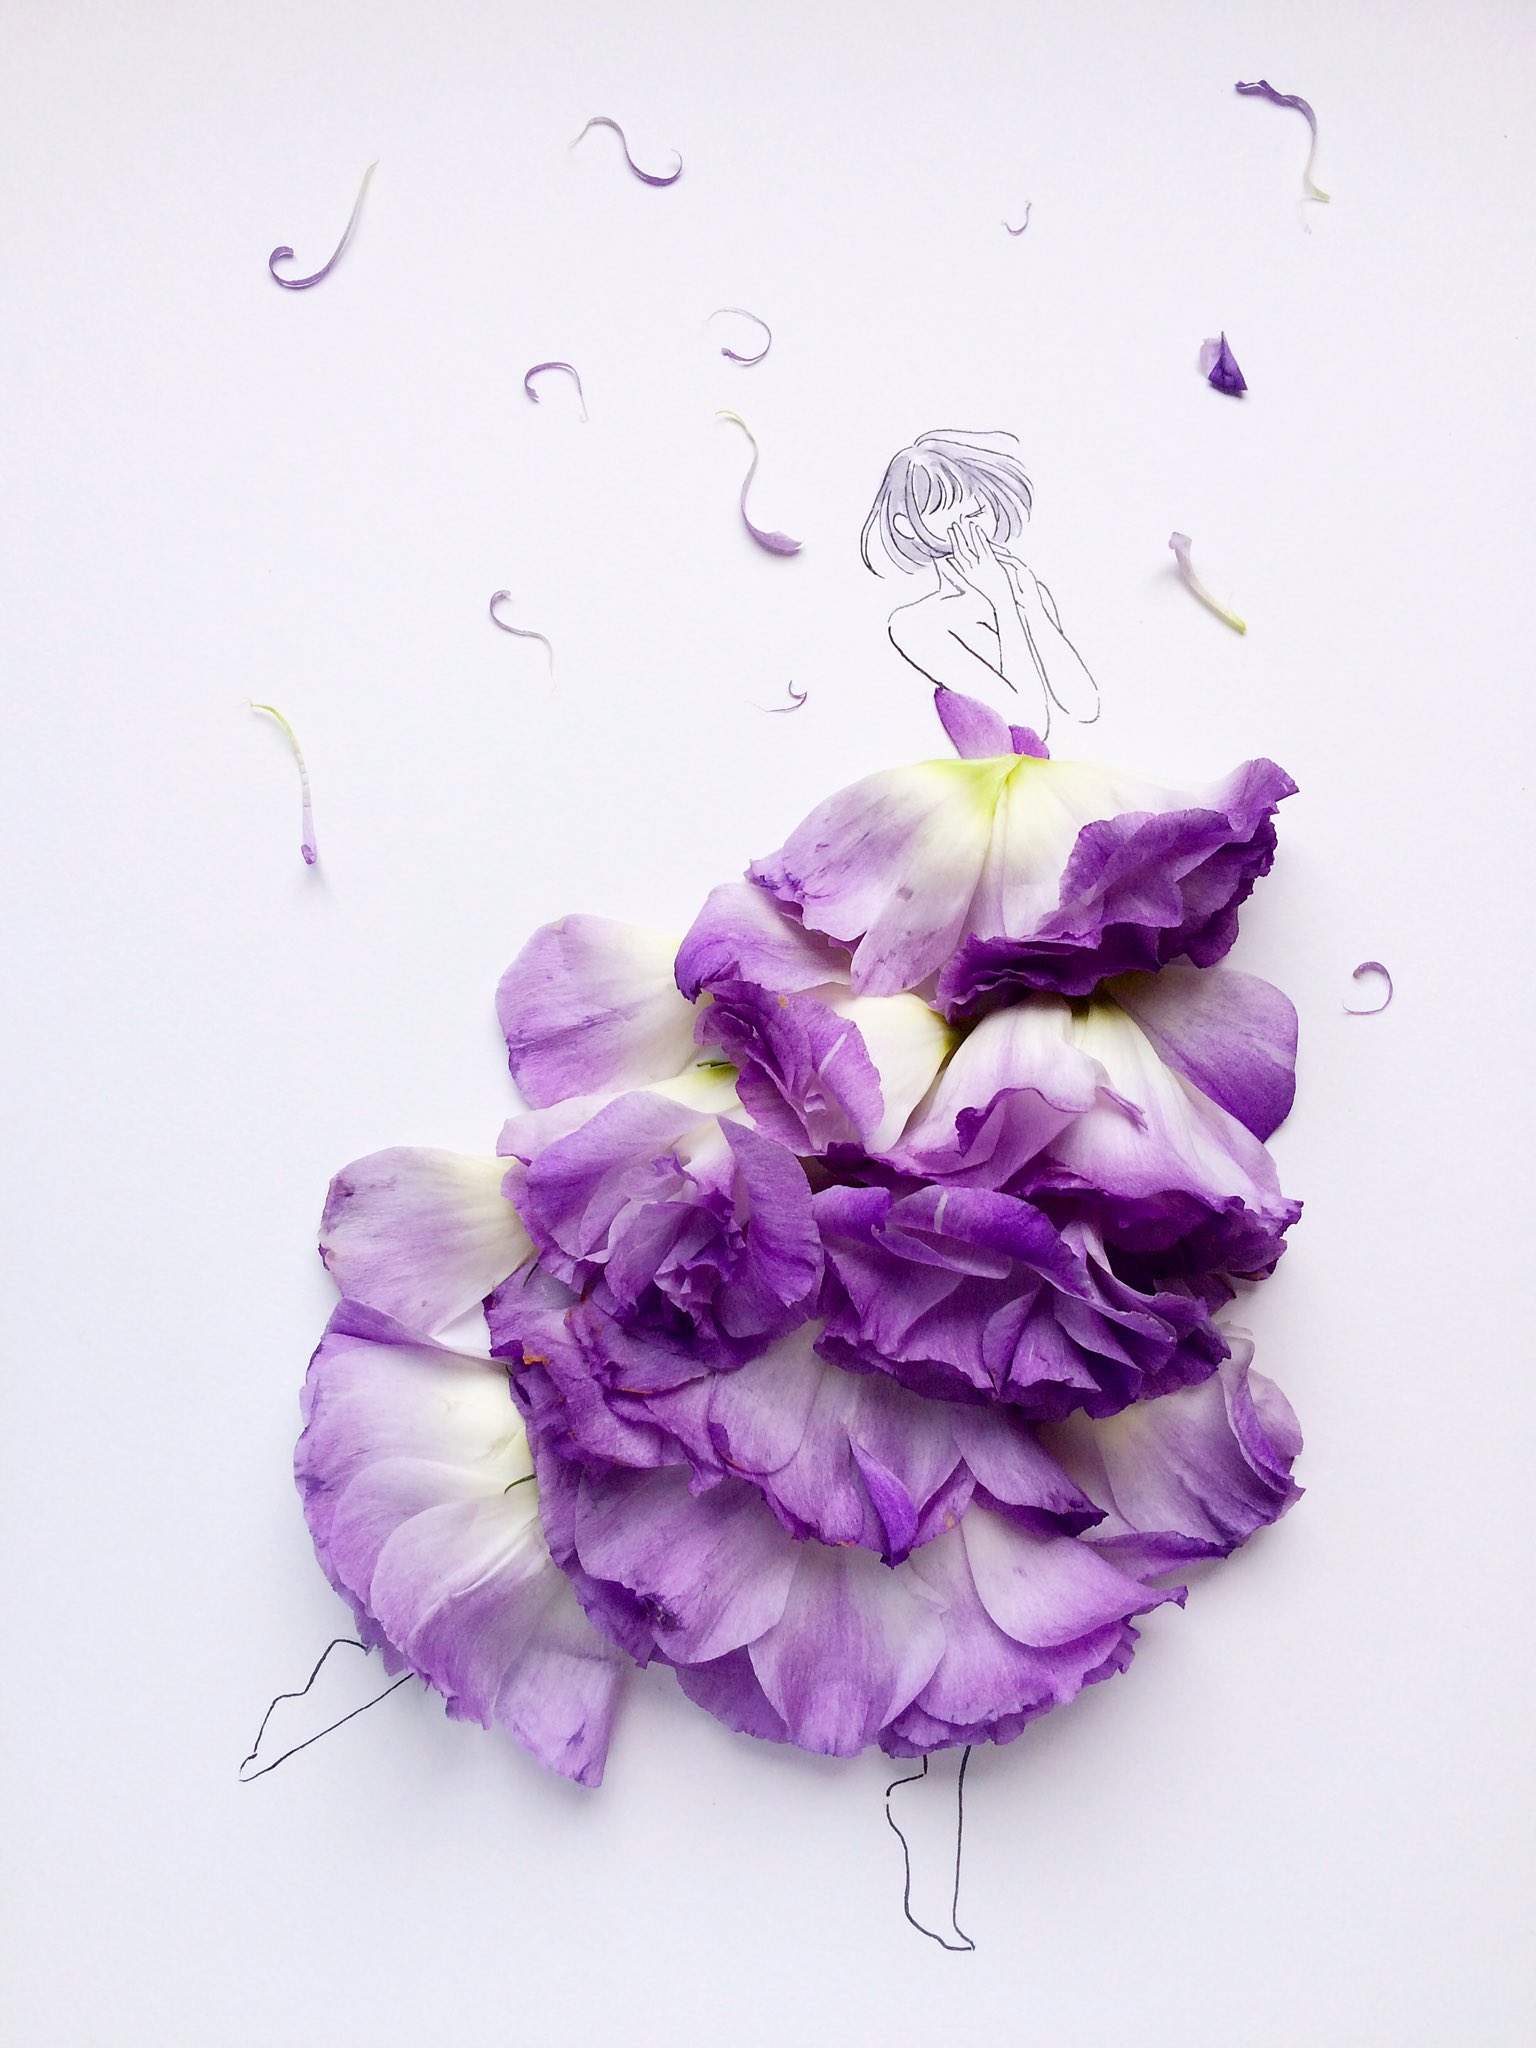 はな言葉 葉菜桜花子 新作ドレスできました 在 Twitter 上 萎れた紫色のトルコキキョウを使って描きました 花言葉 清々しい美しさ T Co 3uf0rhv8ht Twitter